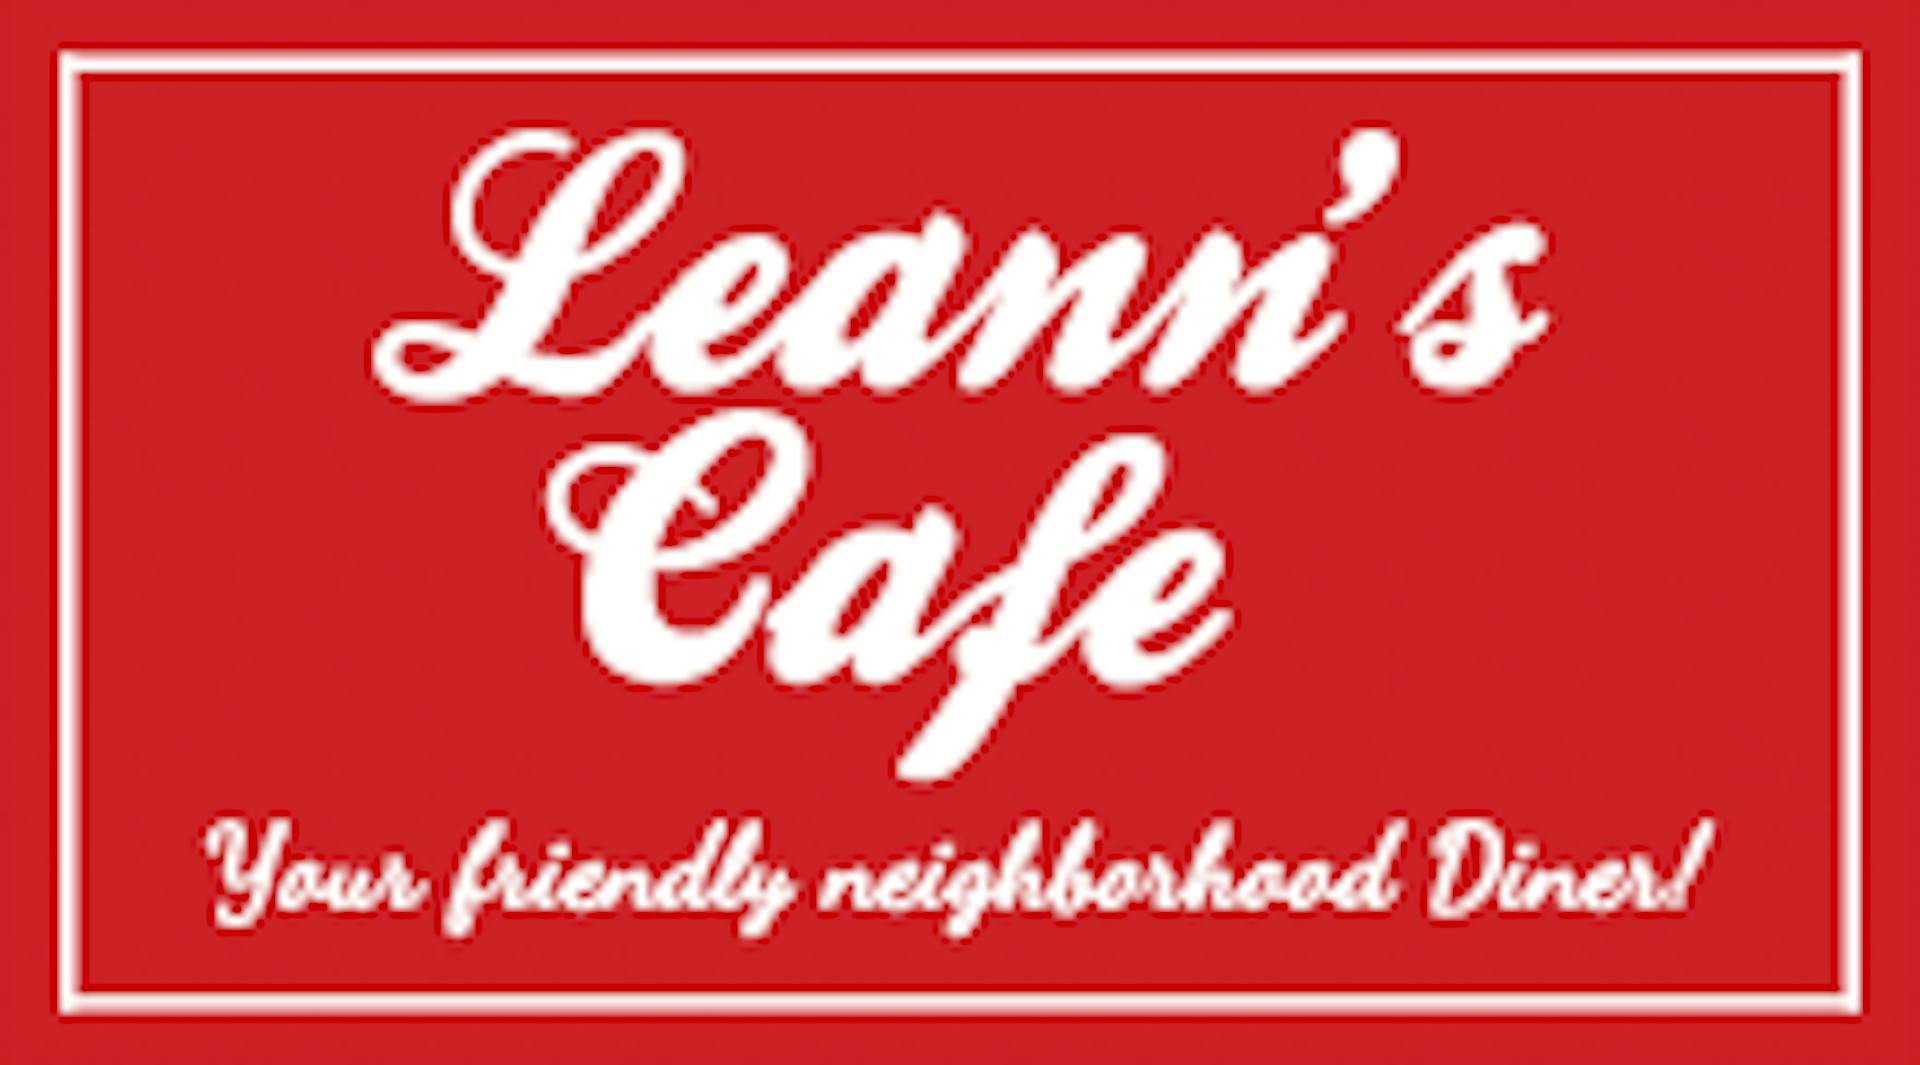 Leann's Cafe